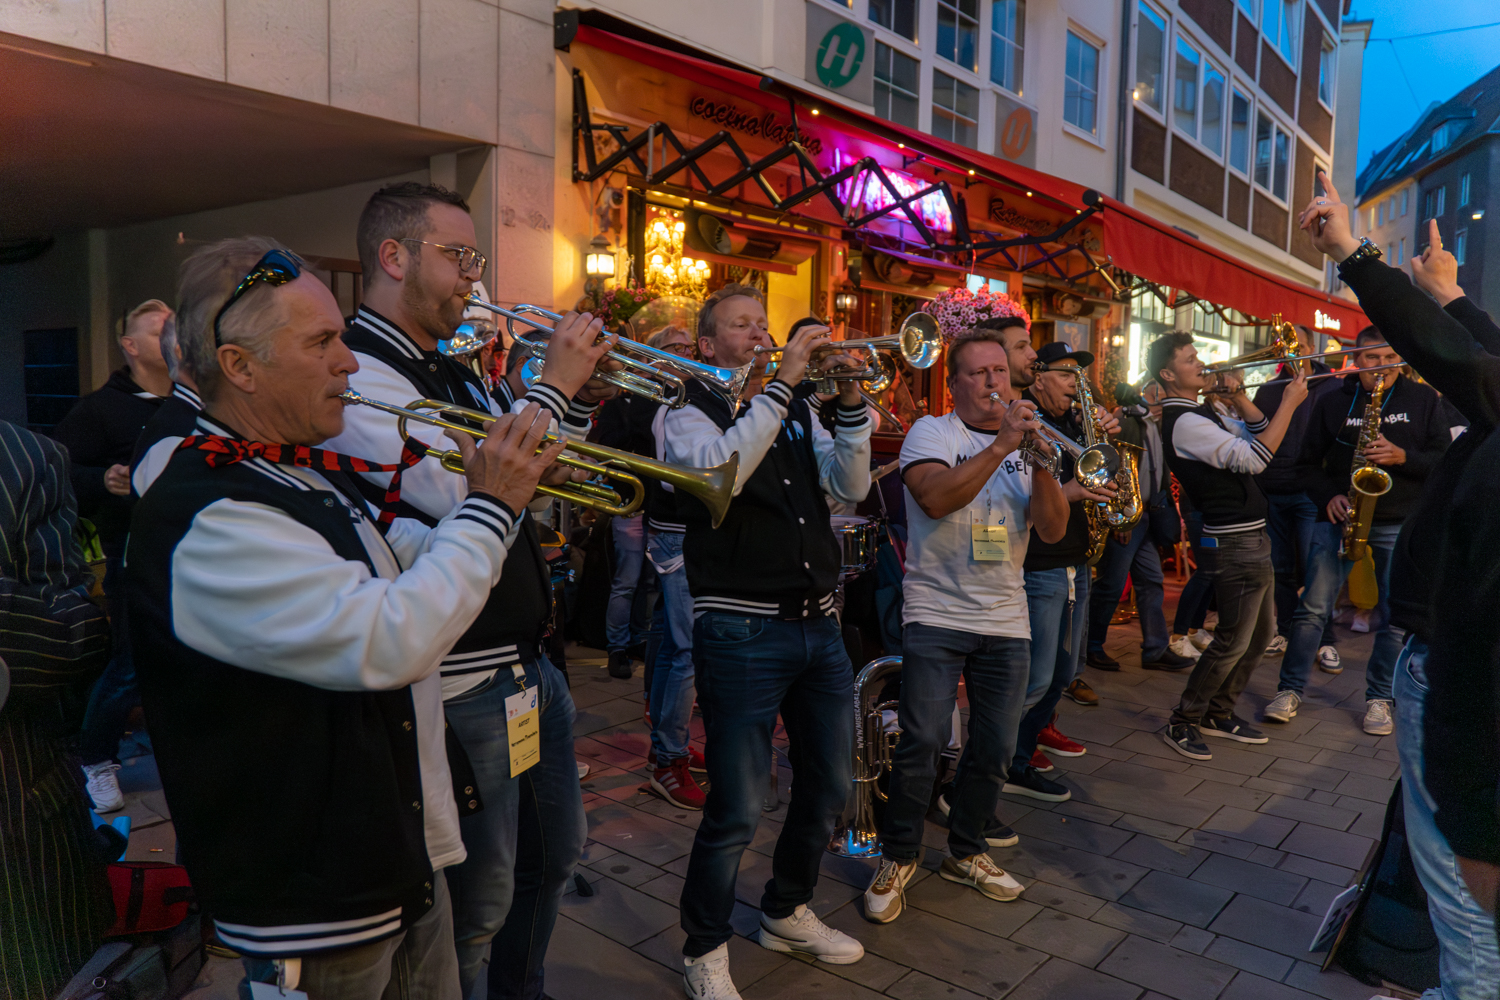 Bilder von der Jazz Rally Foto: LB/ Olaf Oidtmann